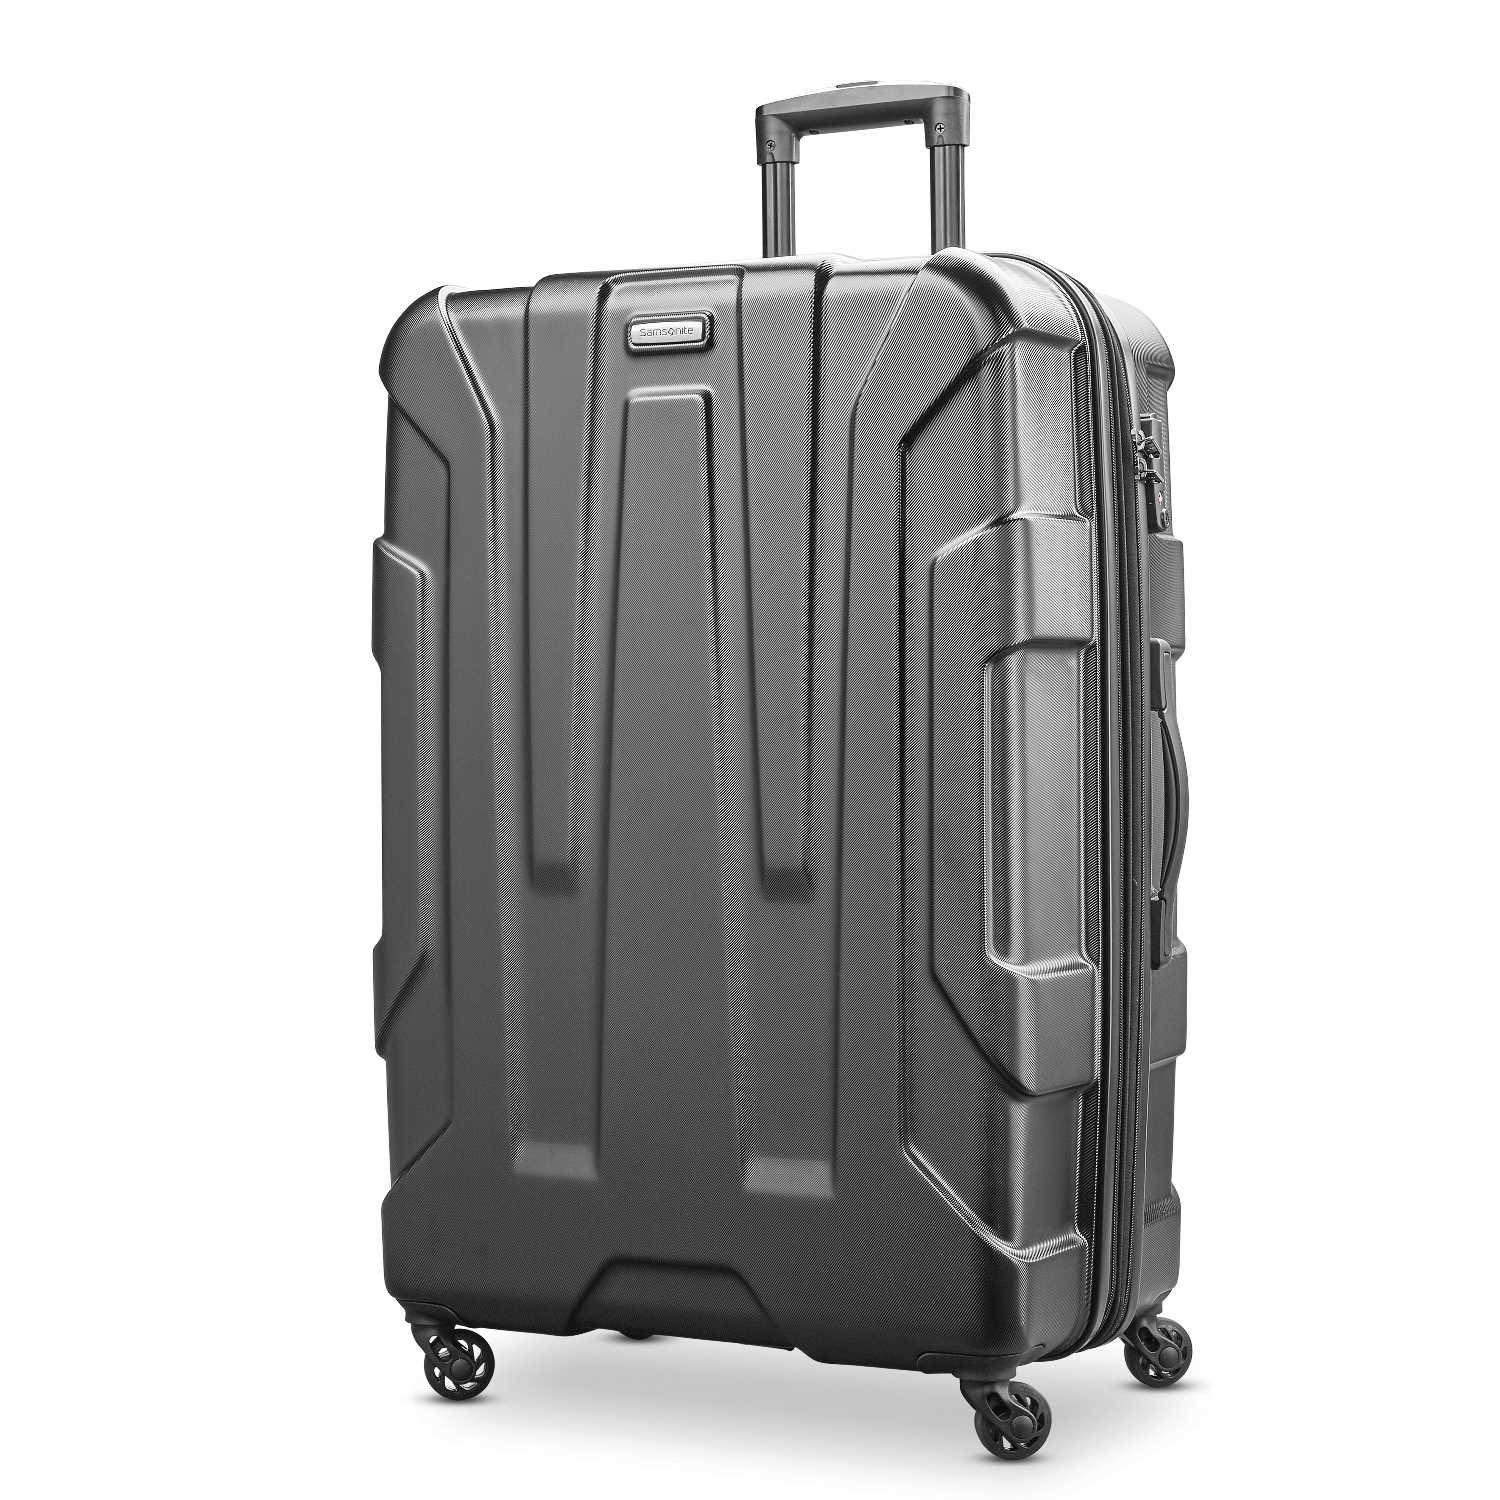 AmazonBasics Hardside Spinner Luggage 28 Inch